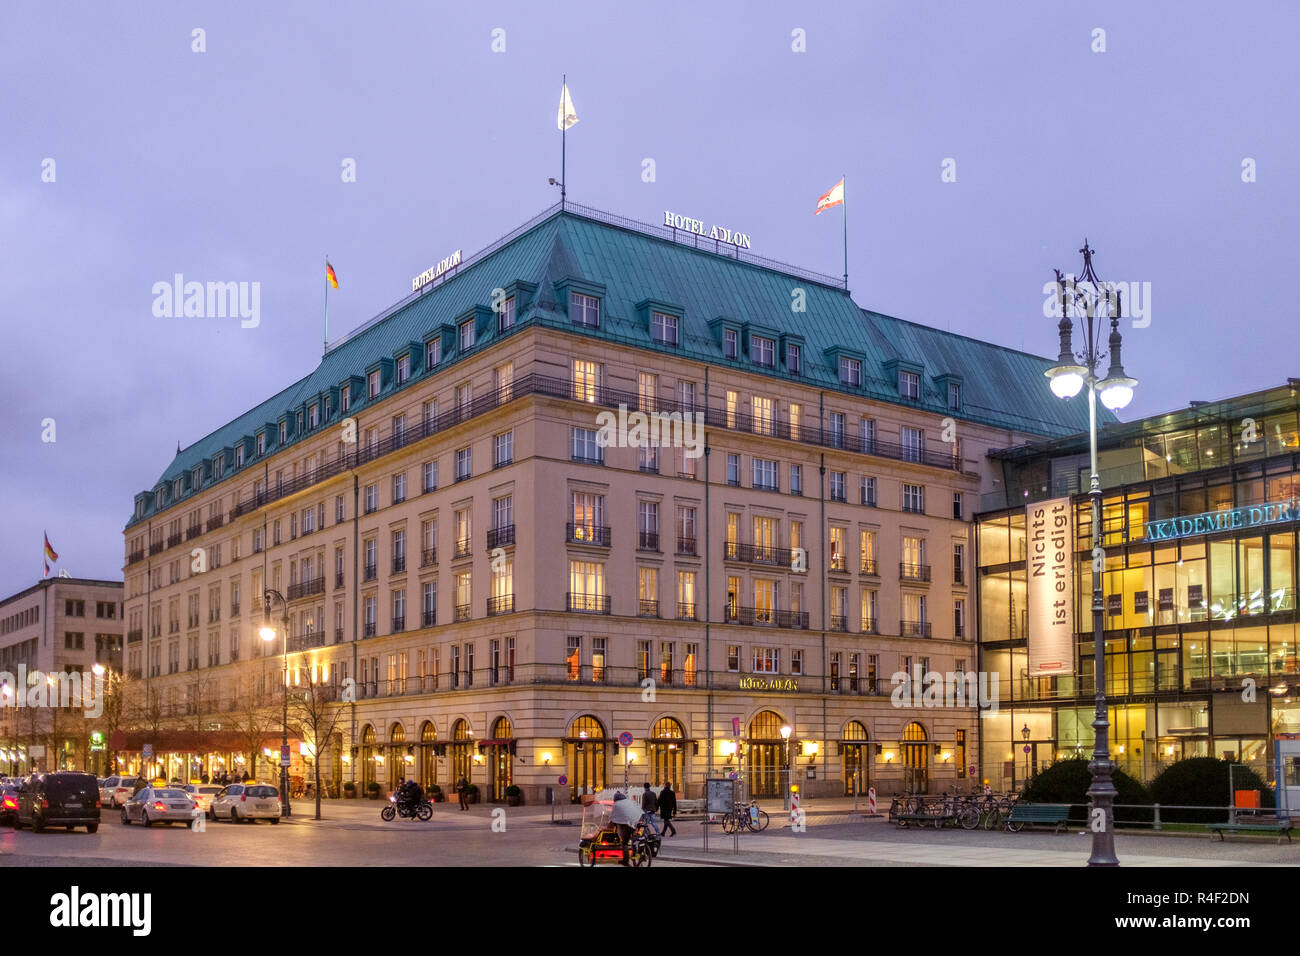 Hotel Adlon Kempinski Berlin on Unter den Linden , Berlin, Germany Stock Photo